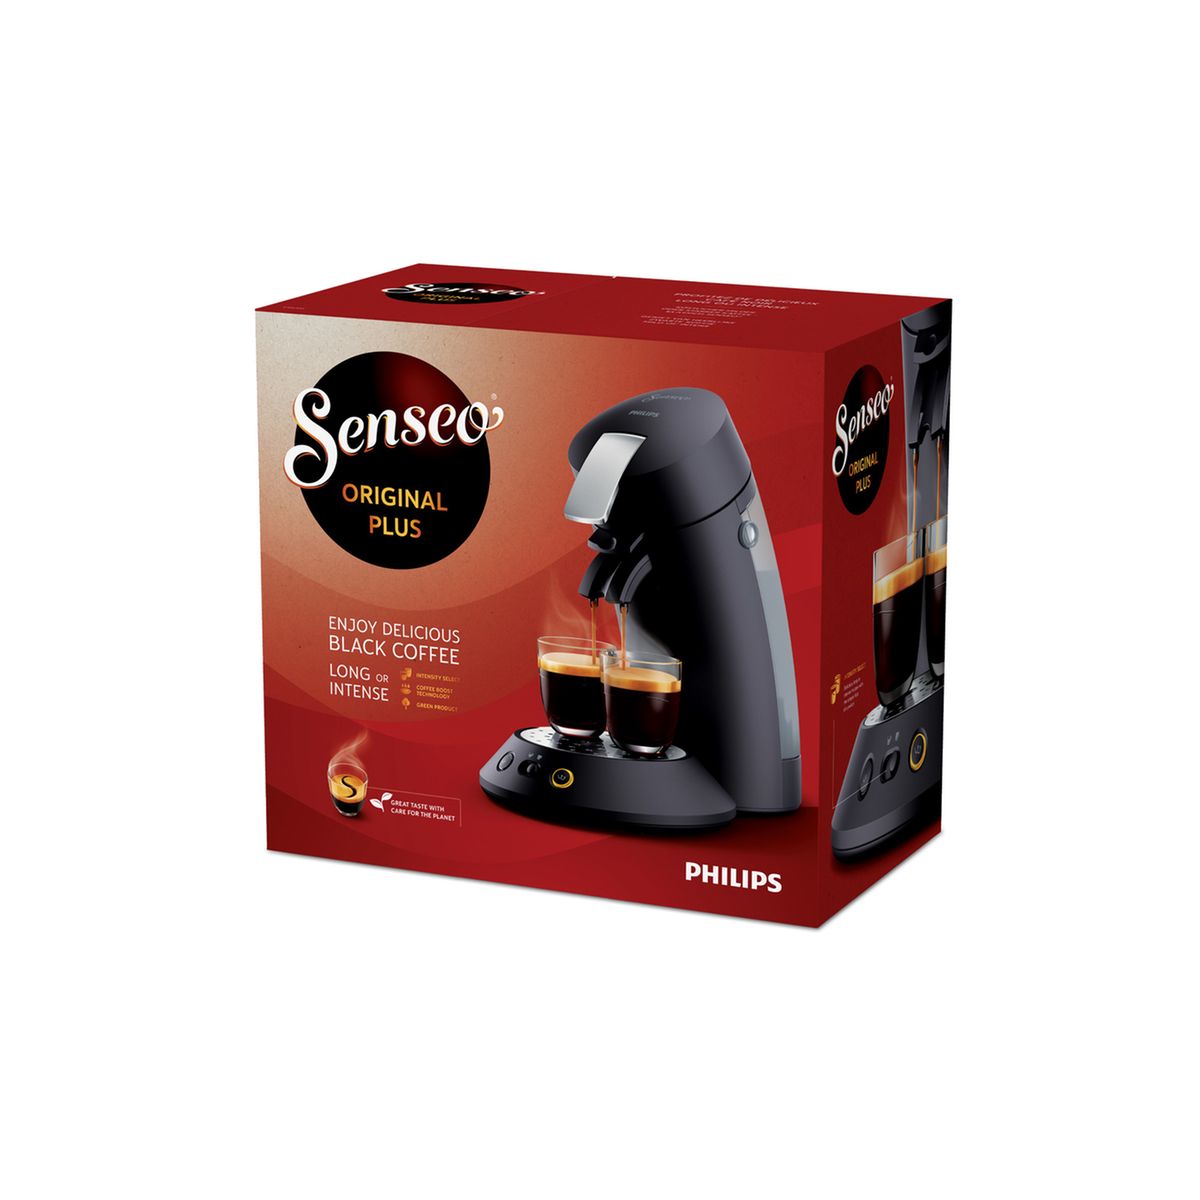 La machine à café dosettes Senseo Original de Philips à prix